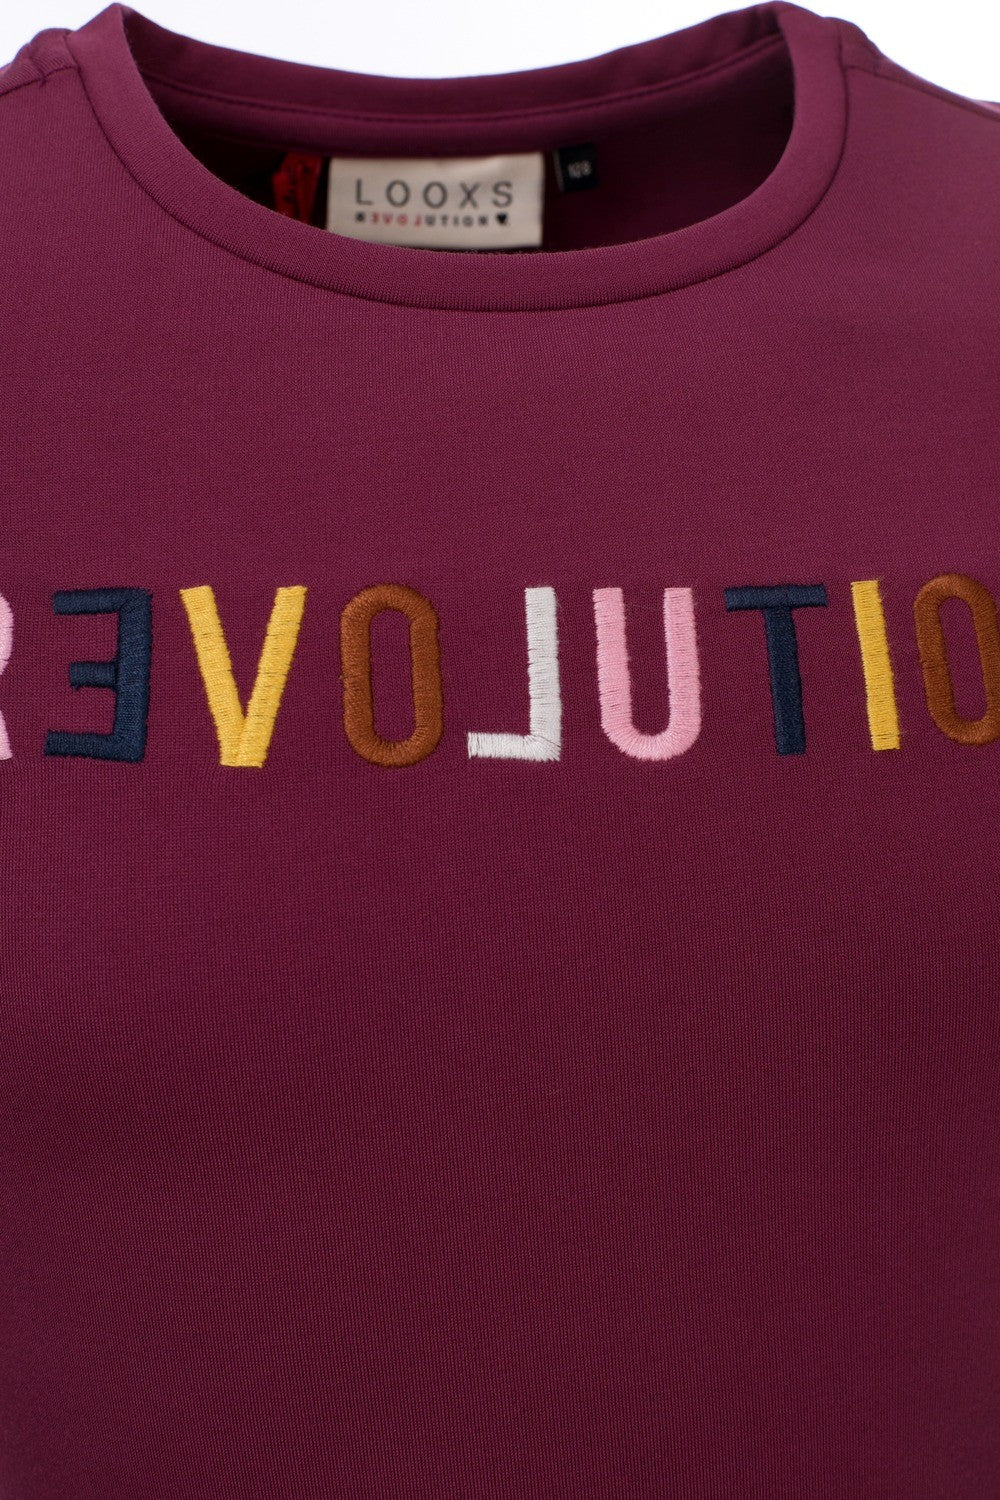 Loox's Revol. Shirt short sleeve Revolution